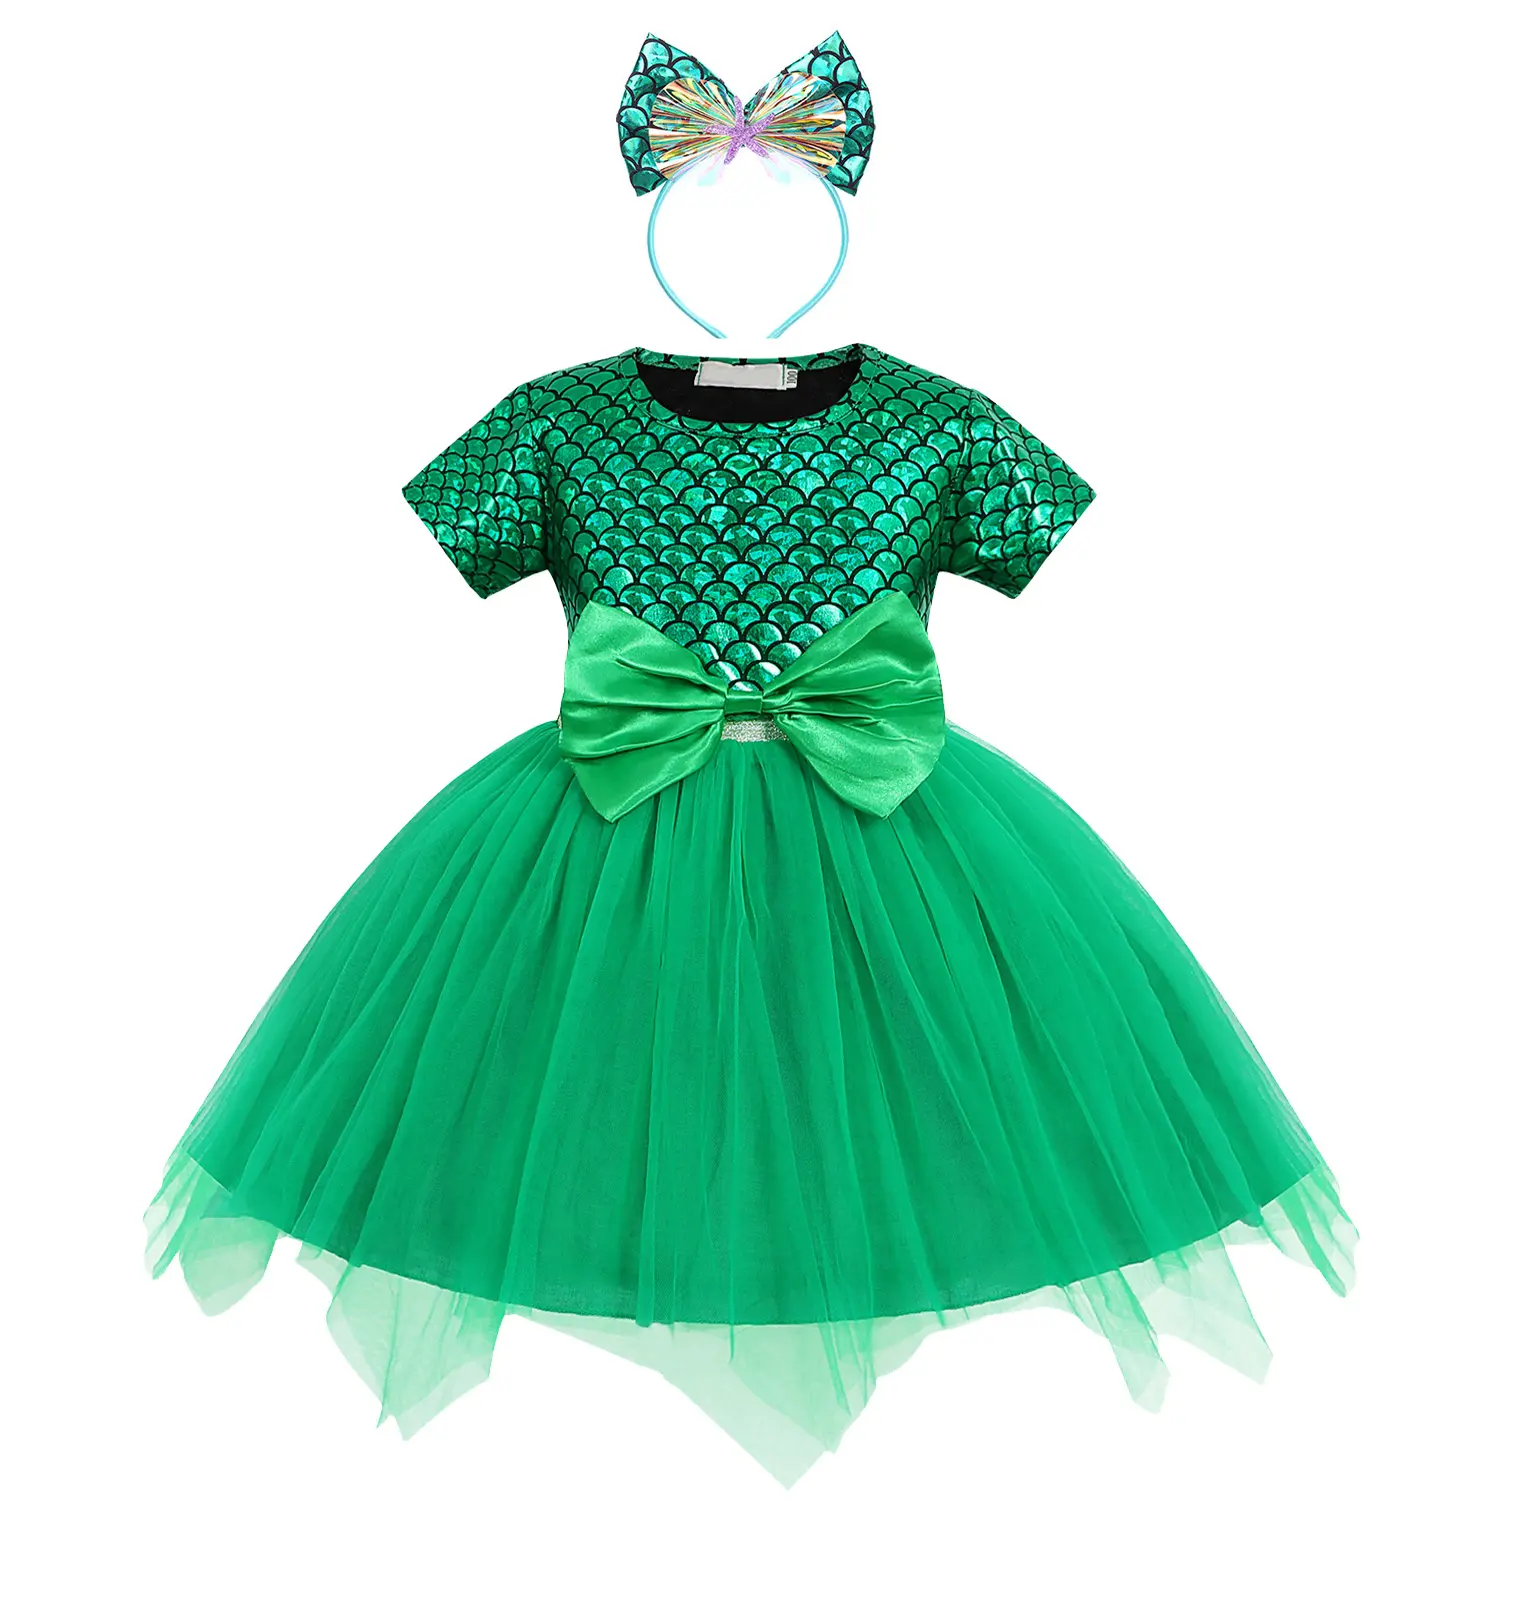 Gaun Pita Putri Duyung Hijau untuk Anak Perempuan, Gaun Pesta Mewah Desain Rok Tulle Bunga untuk Anak Perempuan